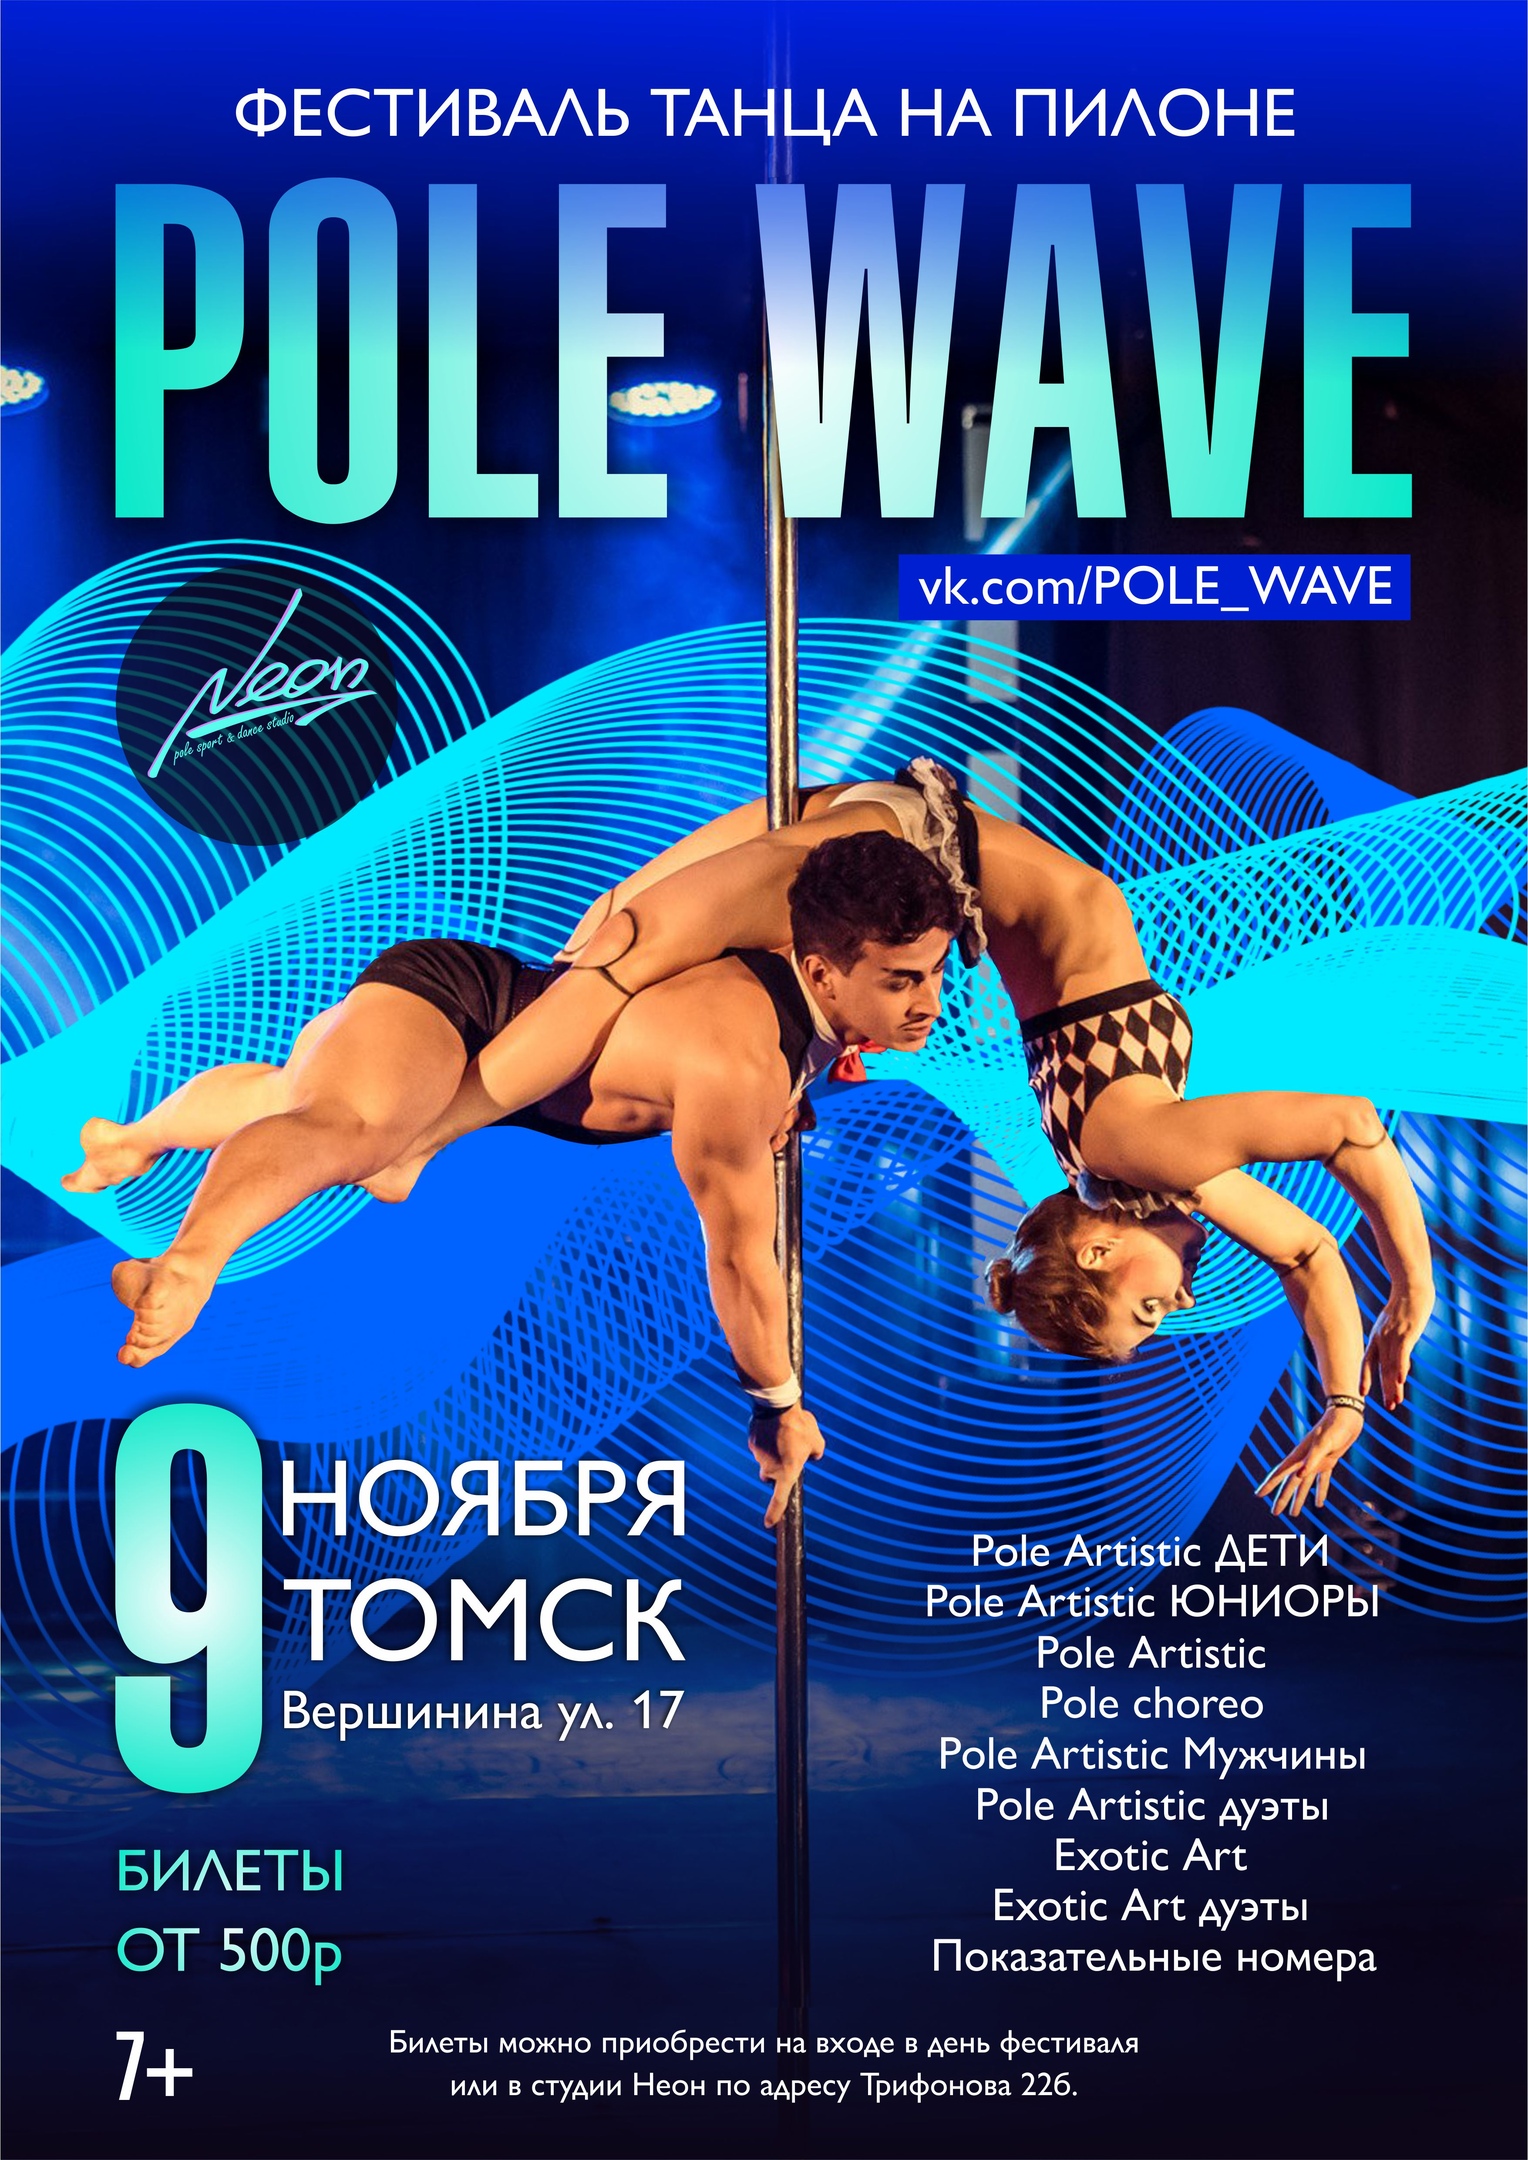 Фестиваль танца на пилоне Pole Wave 2019 в Томске